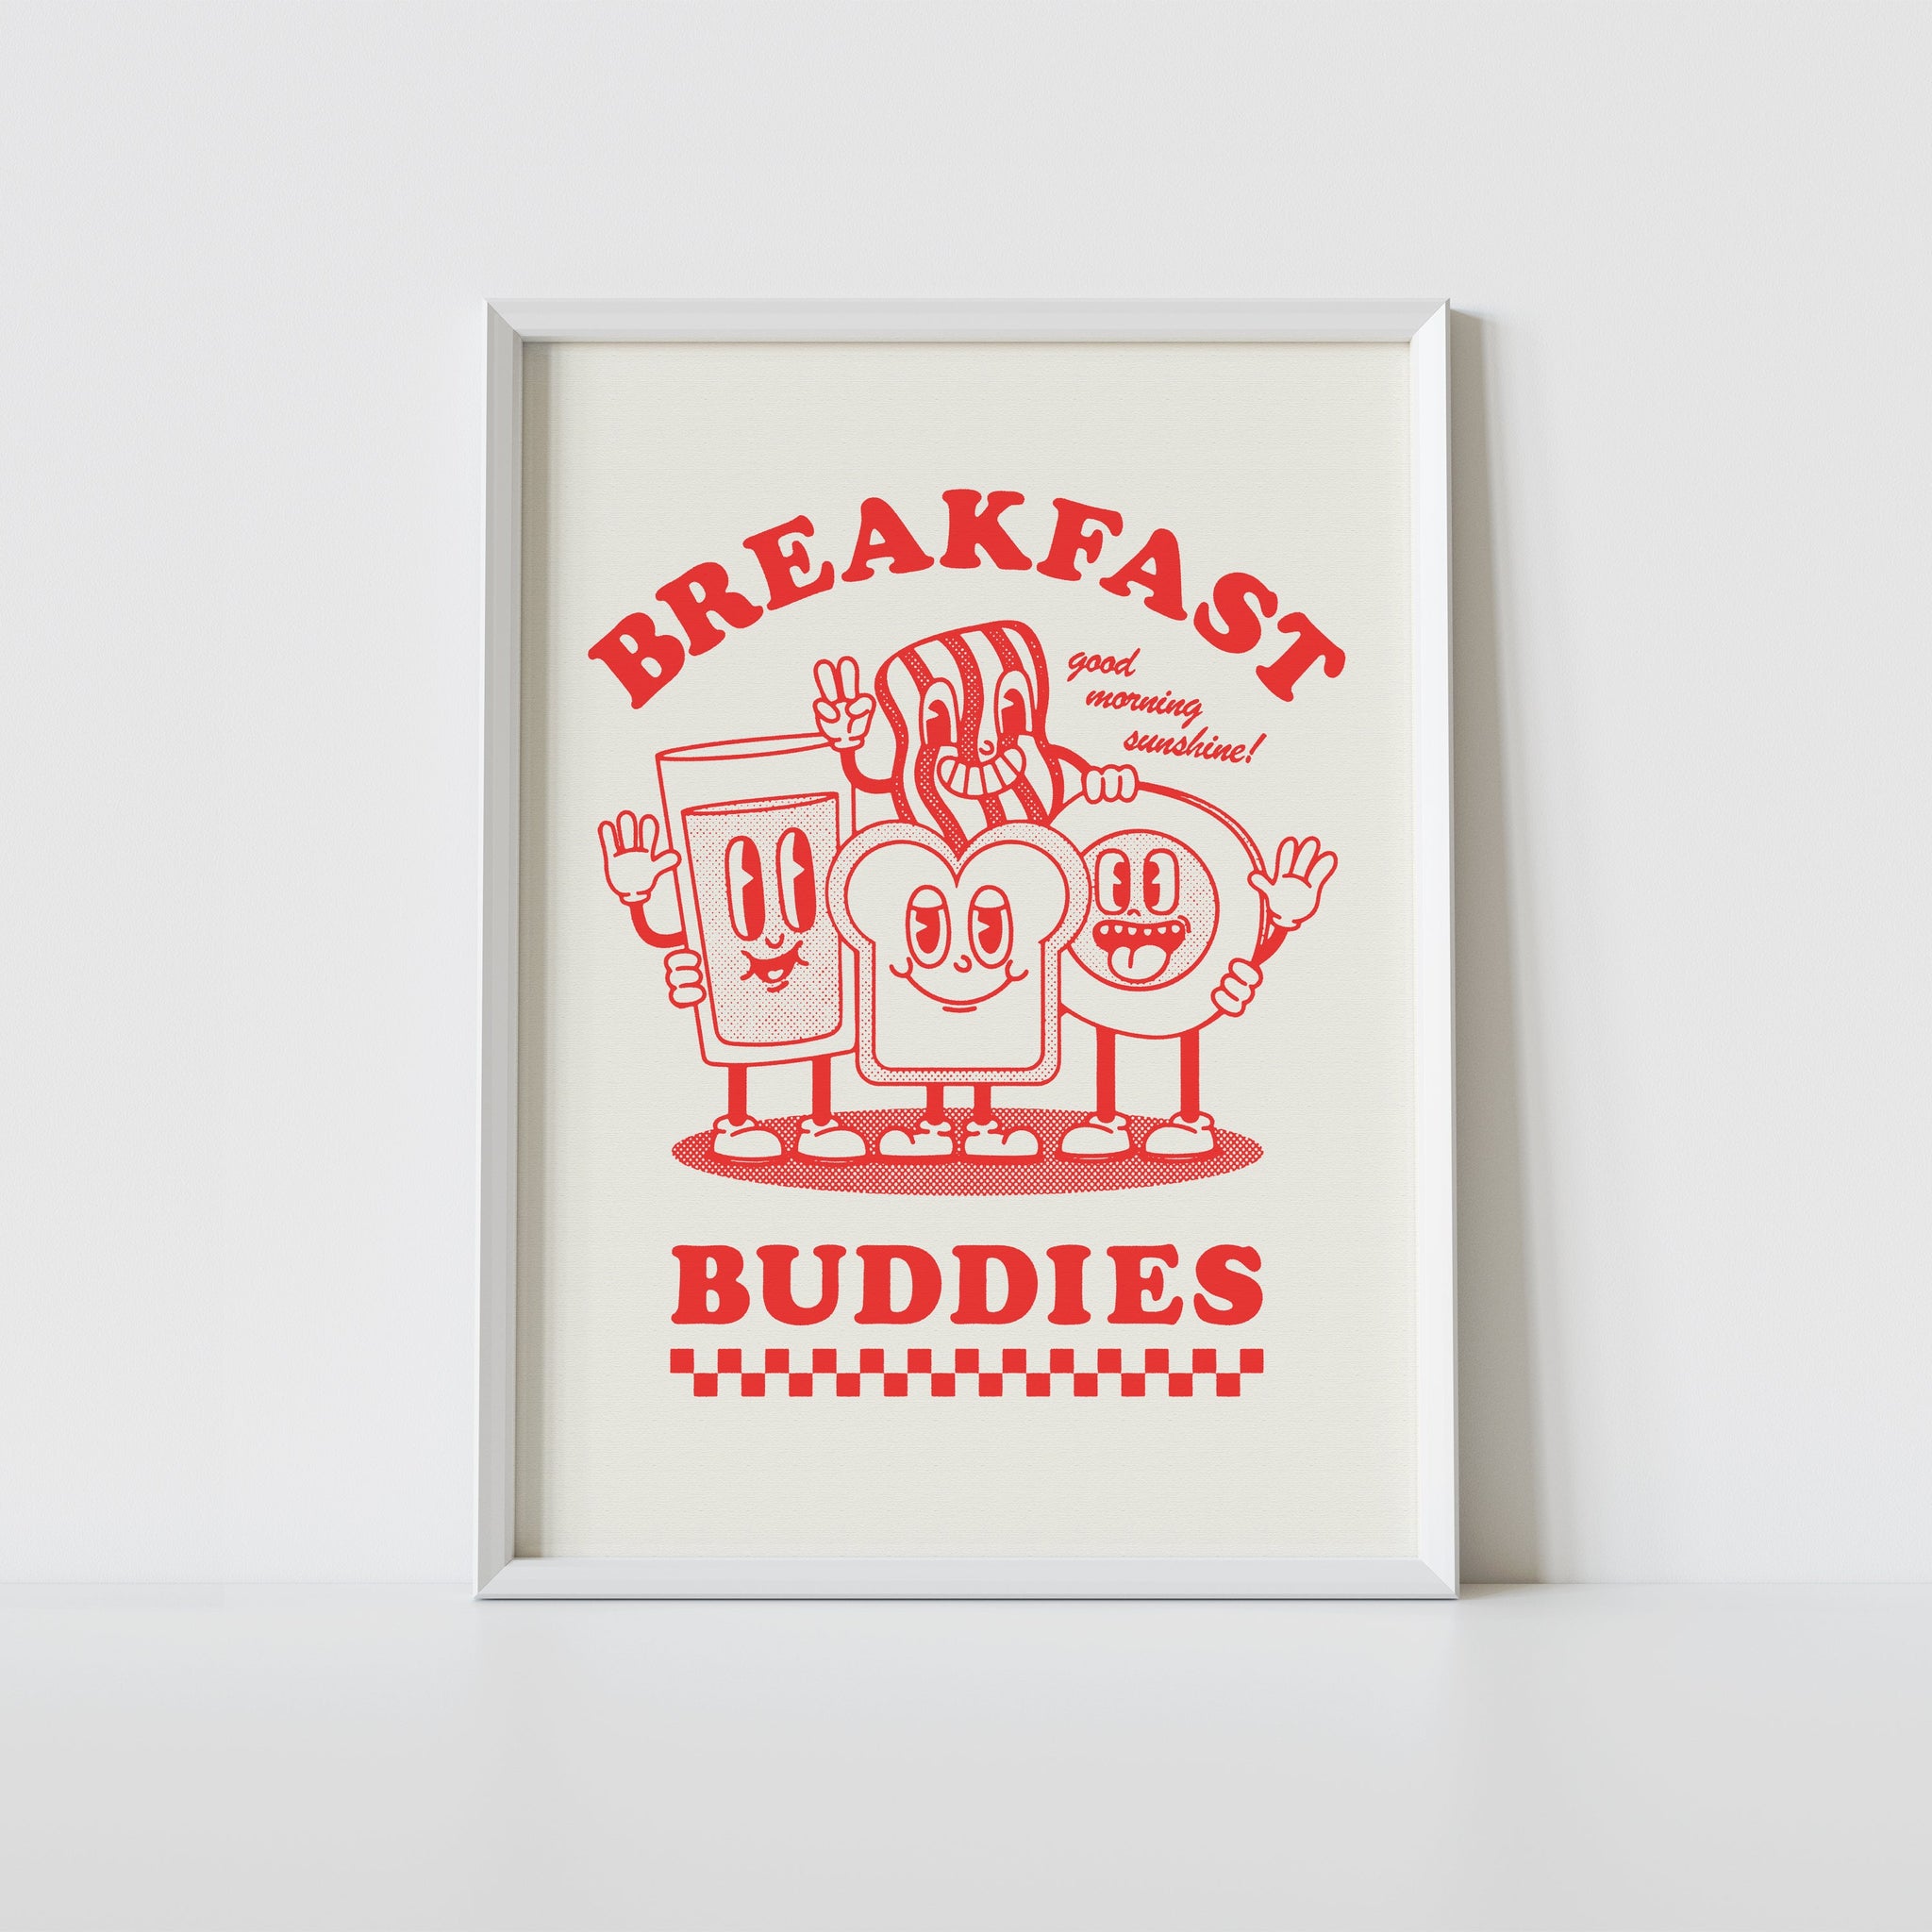 'Breakfast Buddies' print